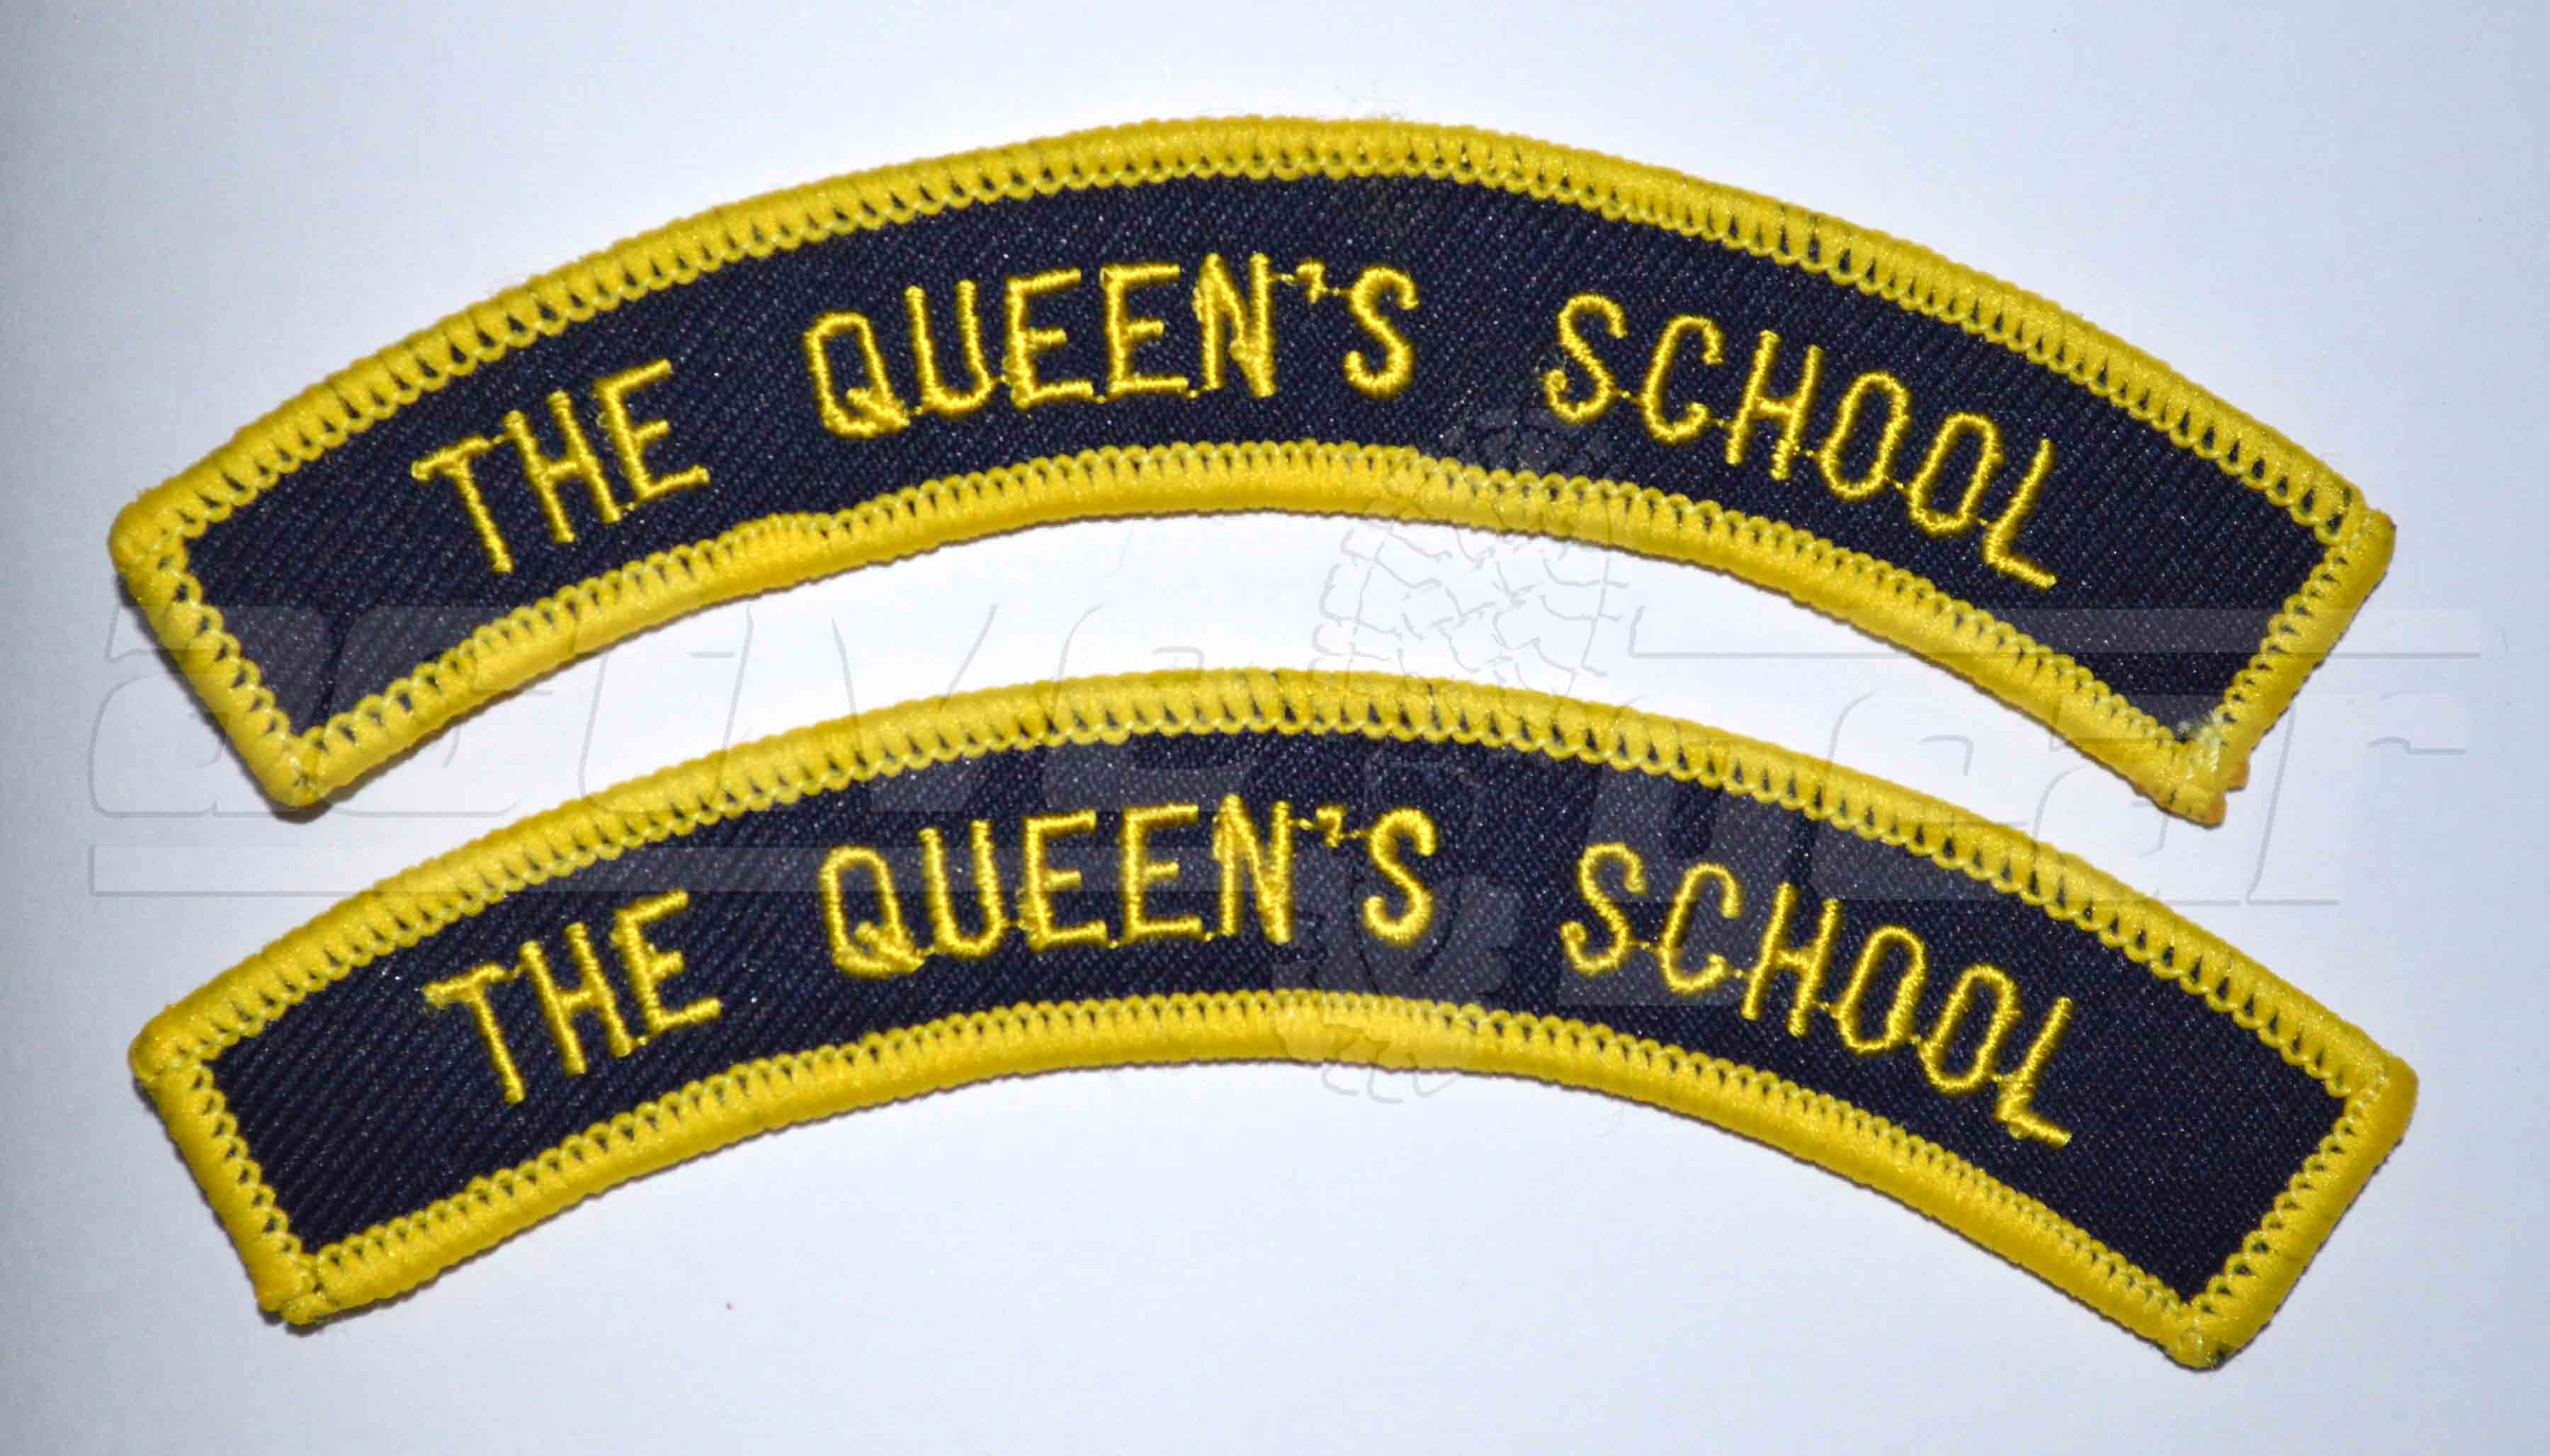 The Queen's School Unit Flash